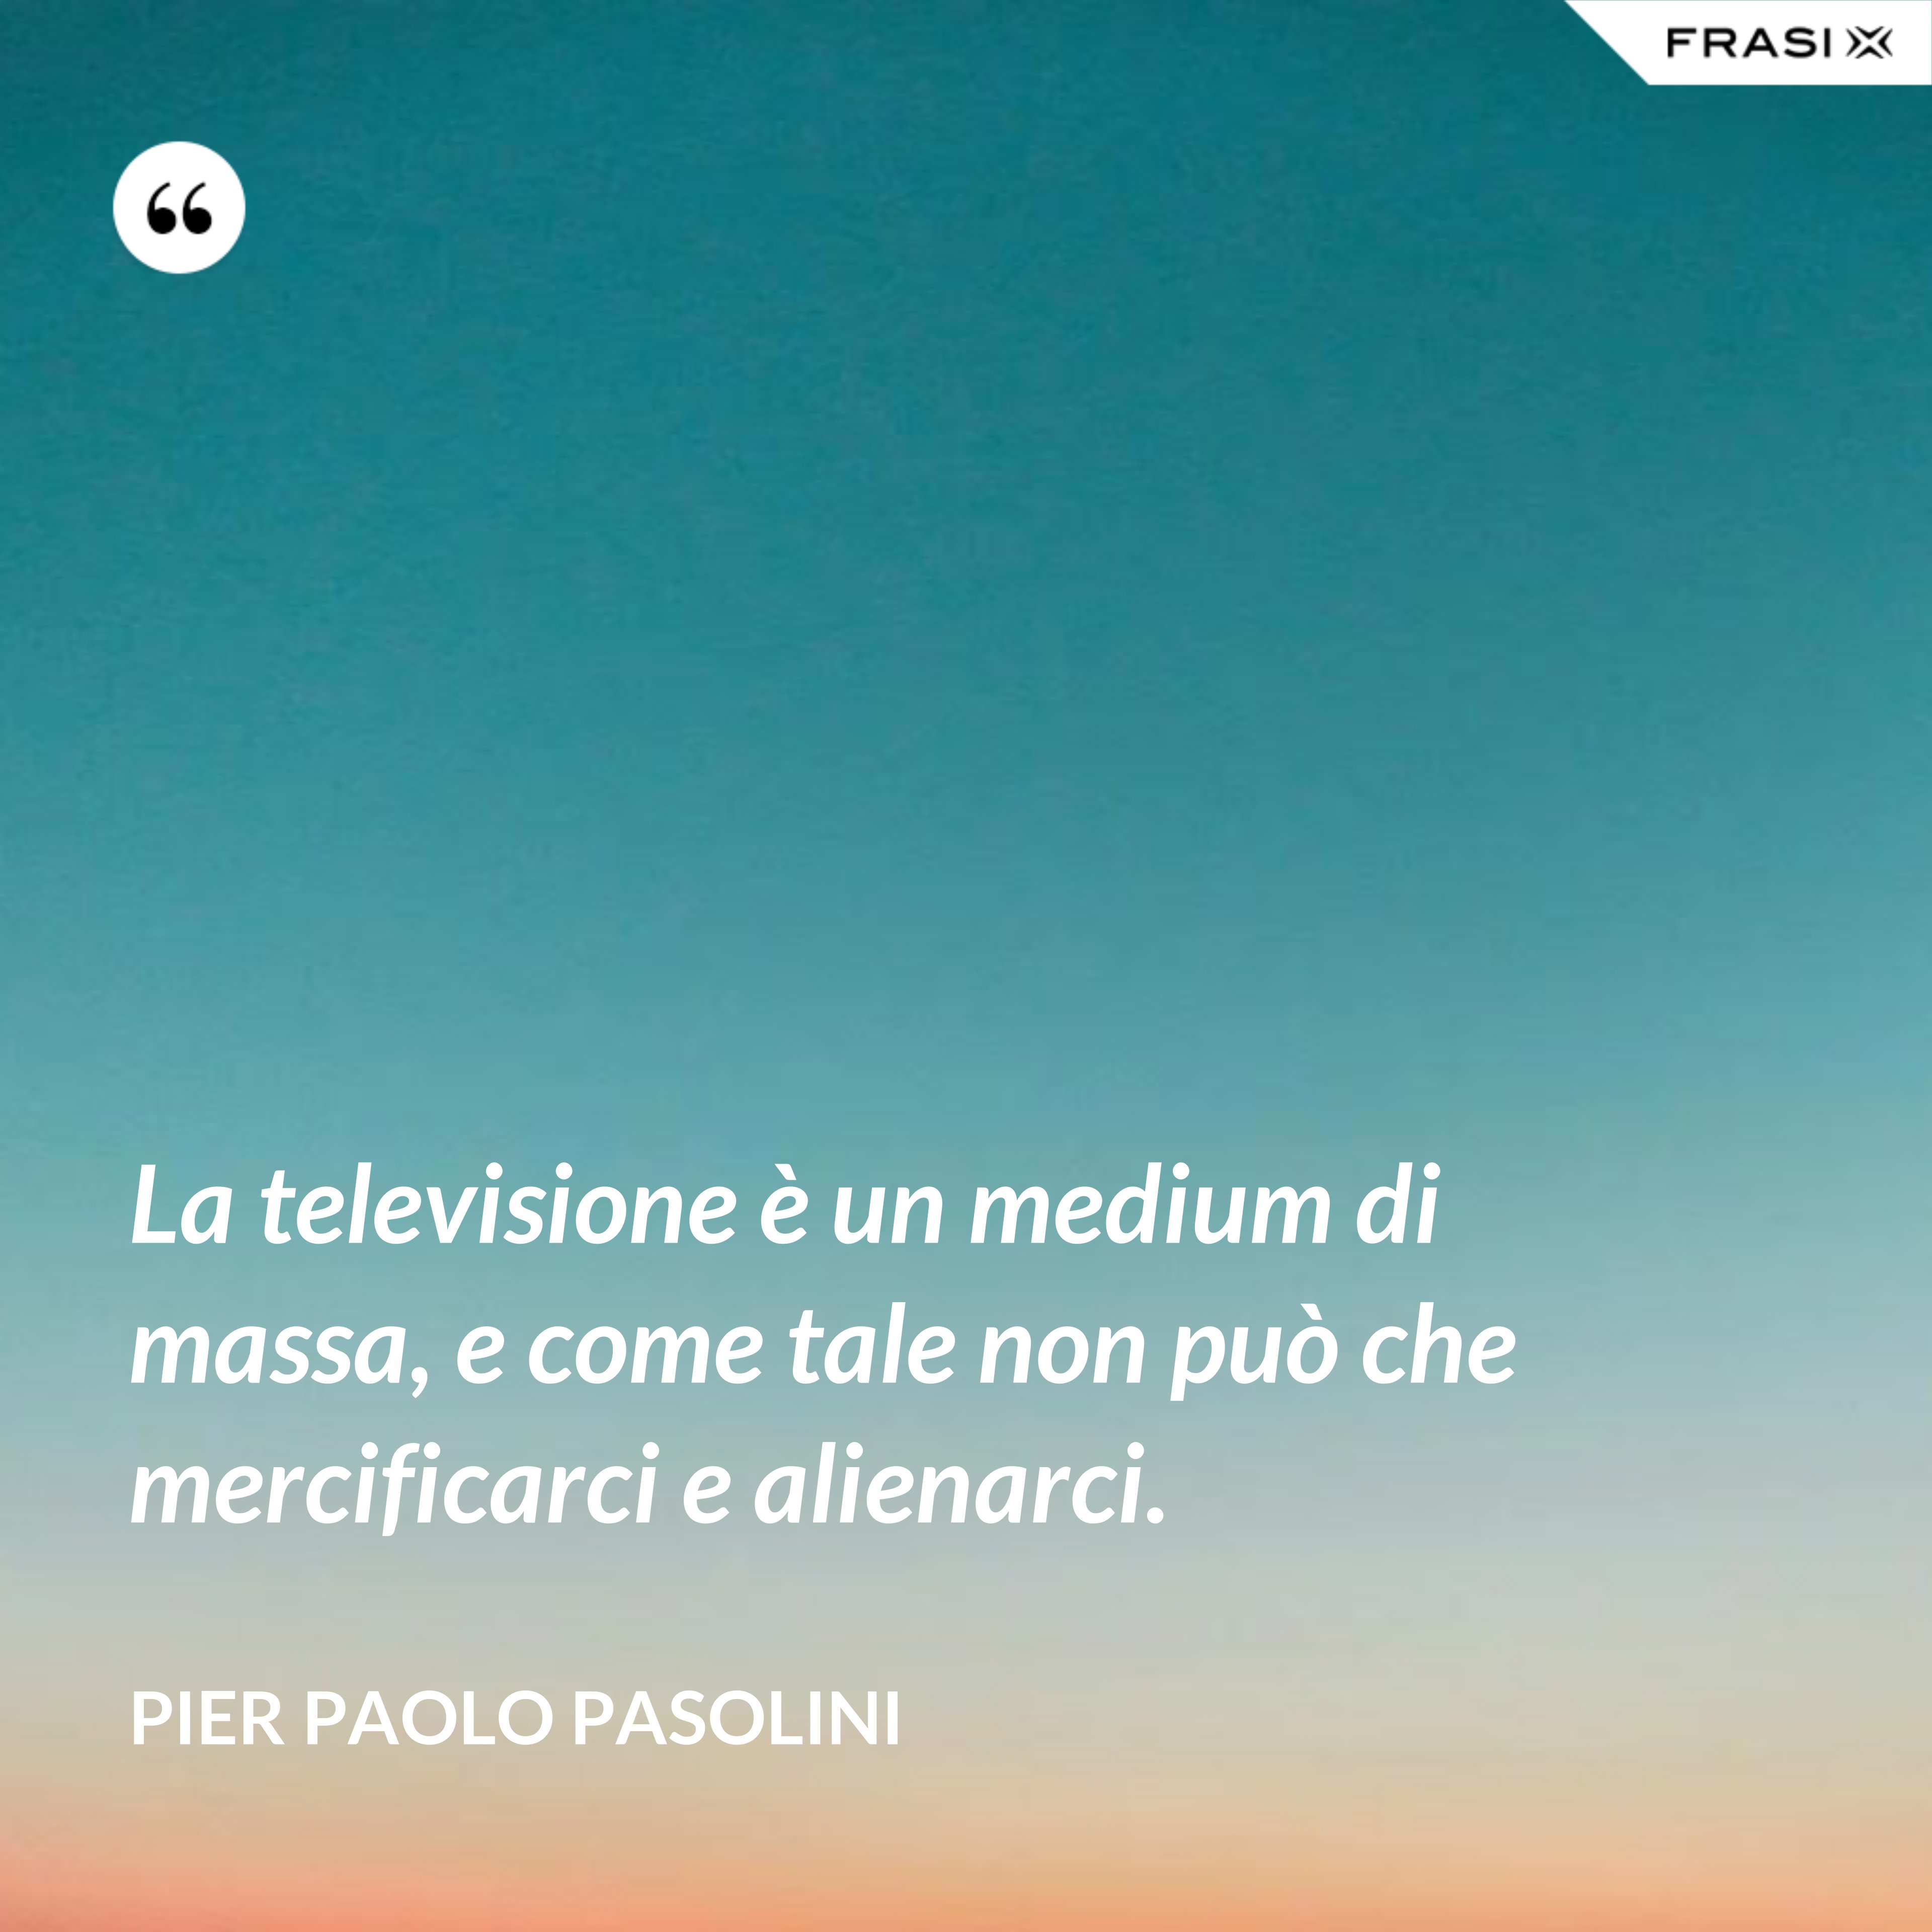 La televisione è un medium di massa, e come tale non può che mercificarci e alienarci. - Pier Paolo Pasolini